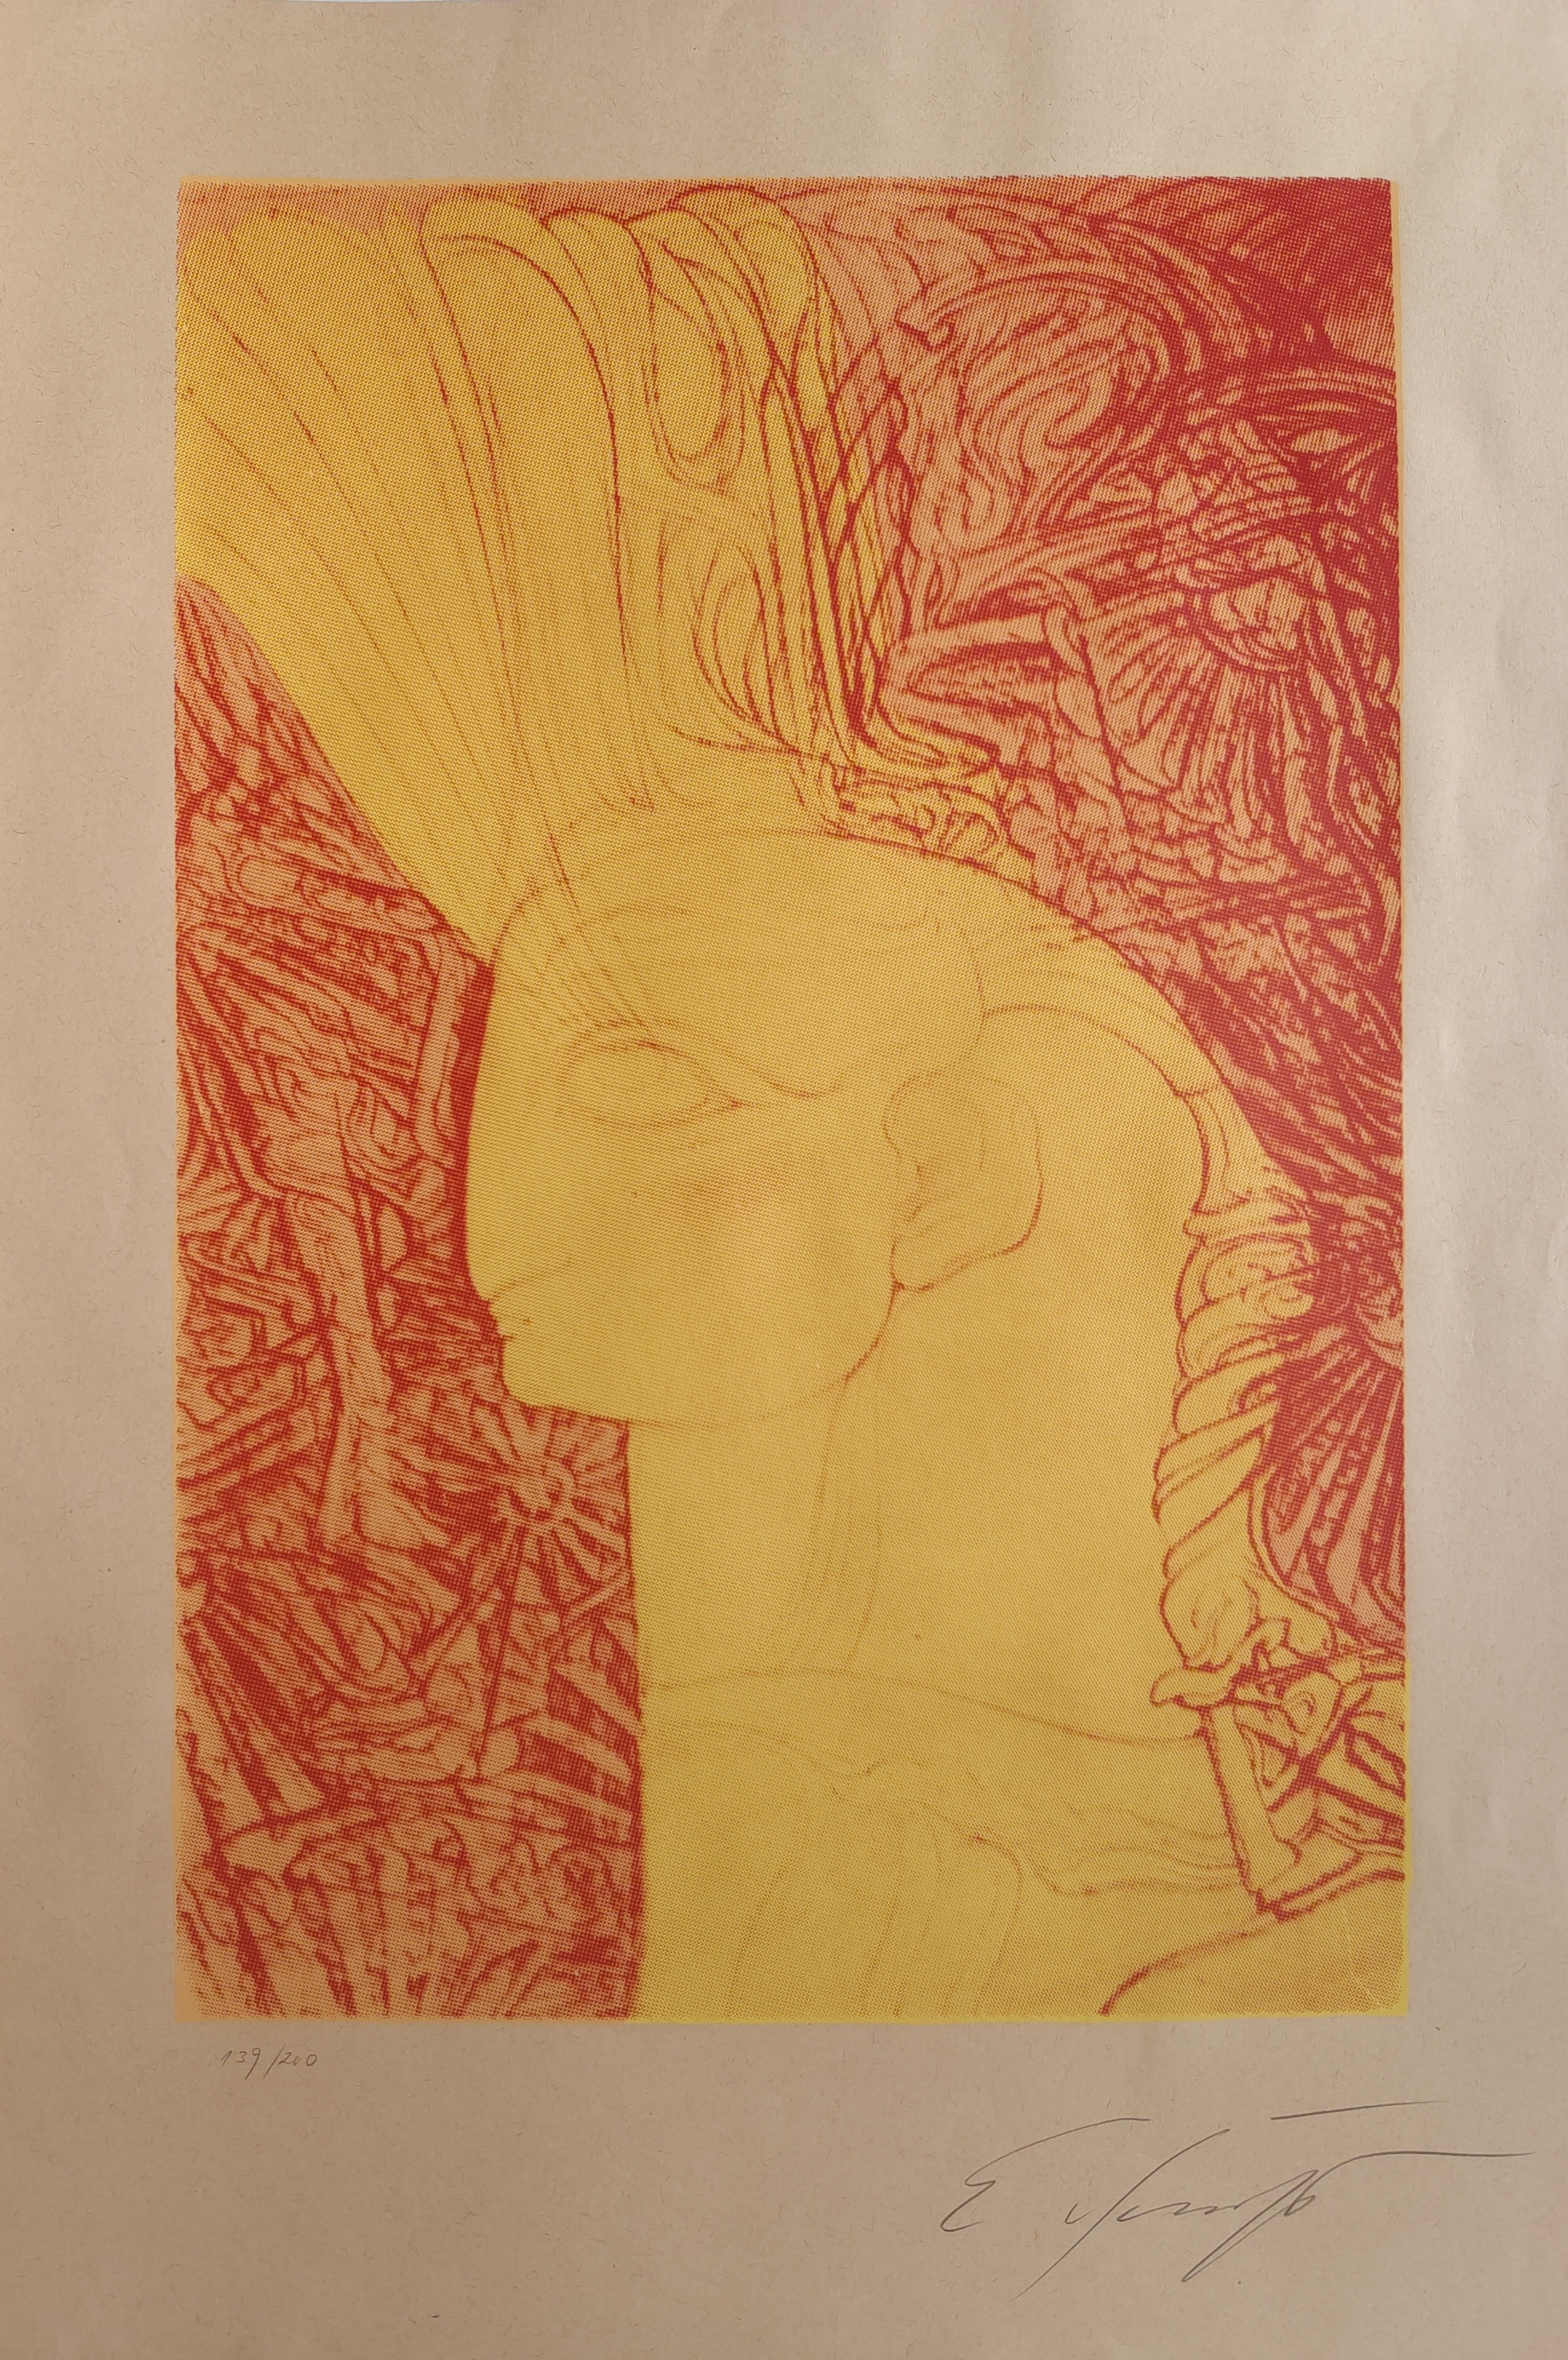  Fuchs (1930 - 2015) "Kopf eines Cherub gelb-rot"